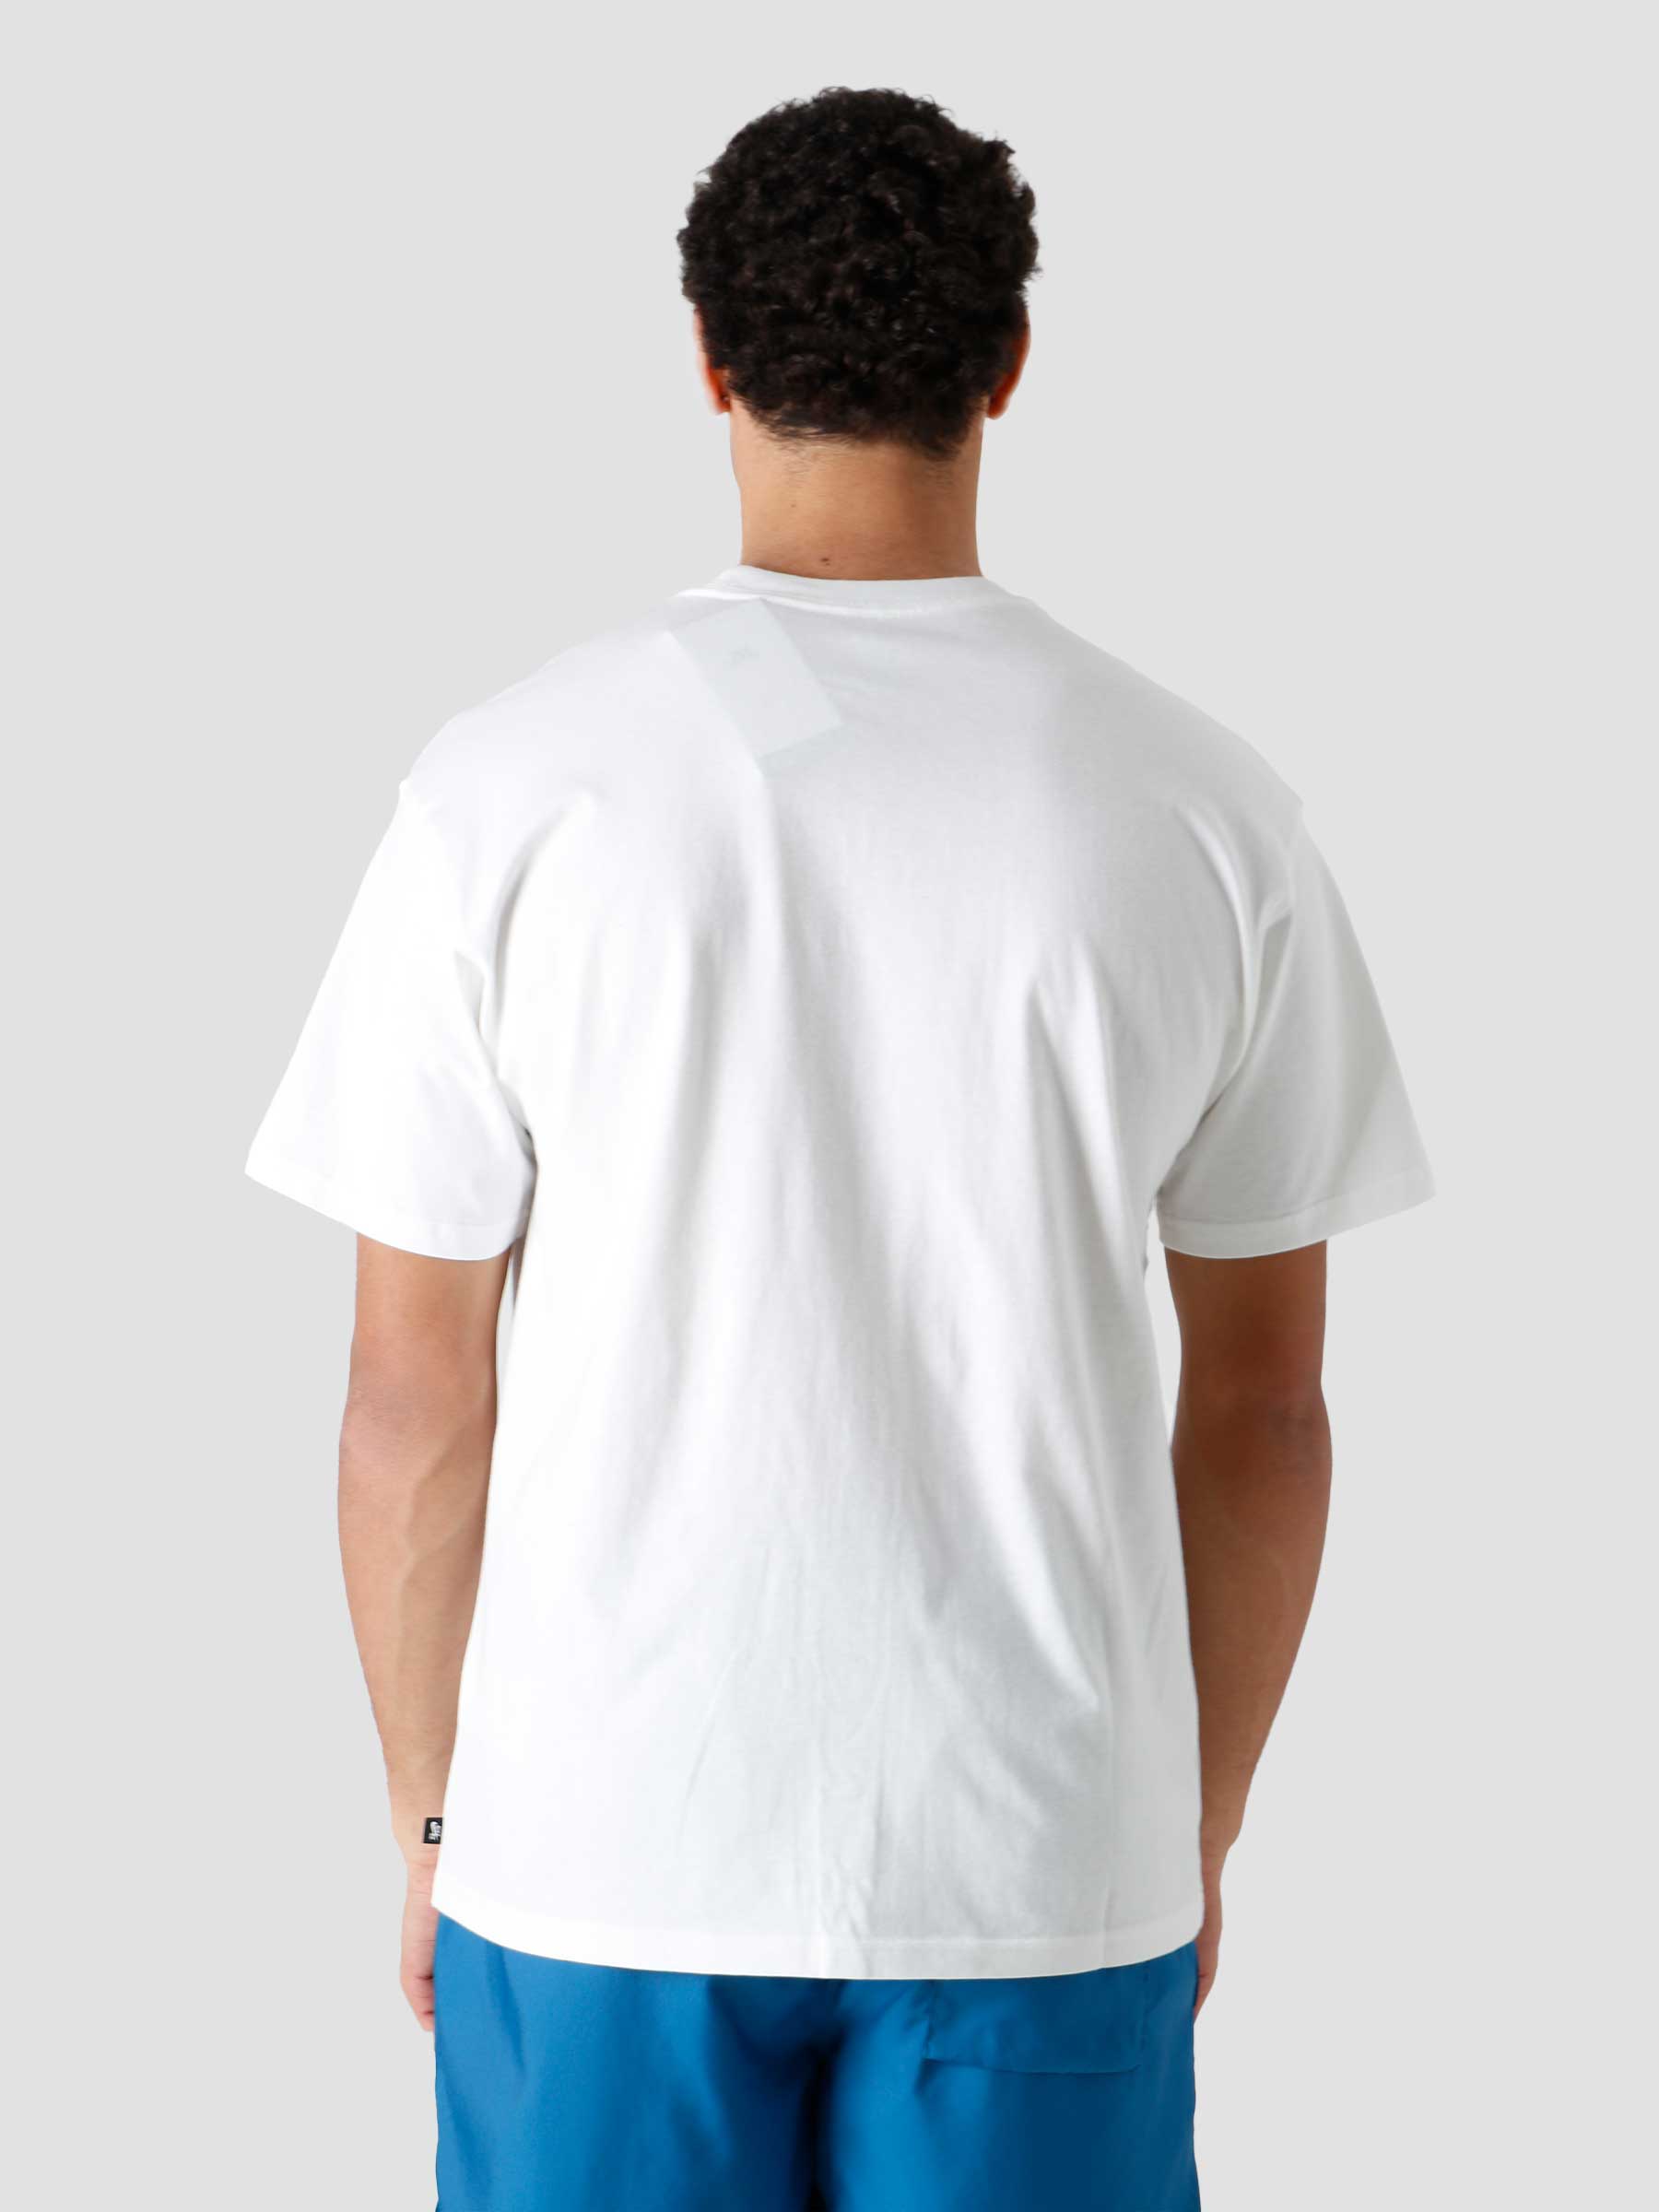 M Nk SB T-Shirt Logo White Black DC7817-100